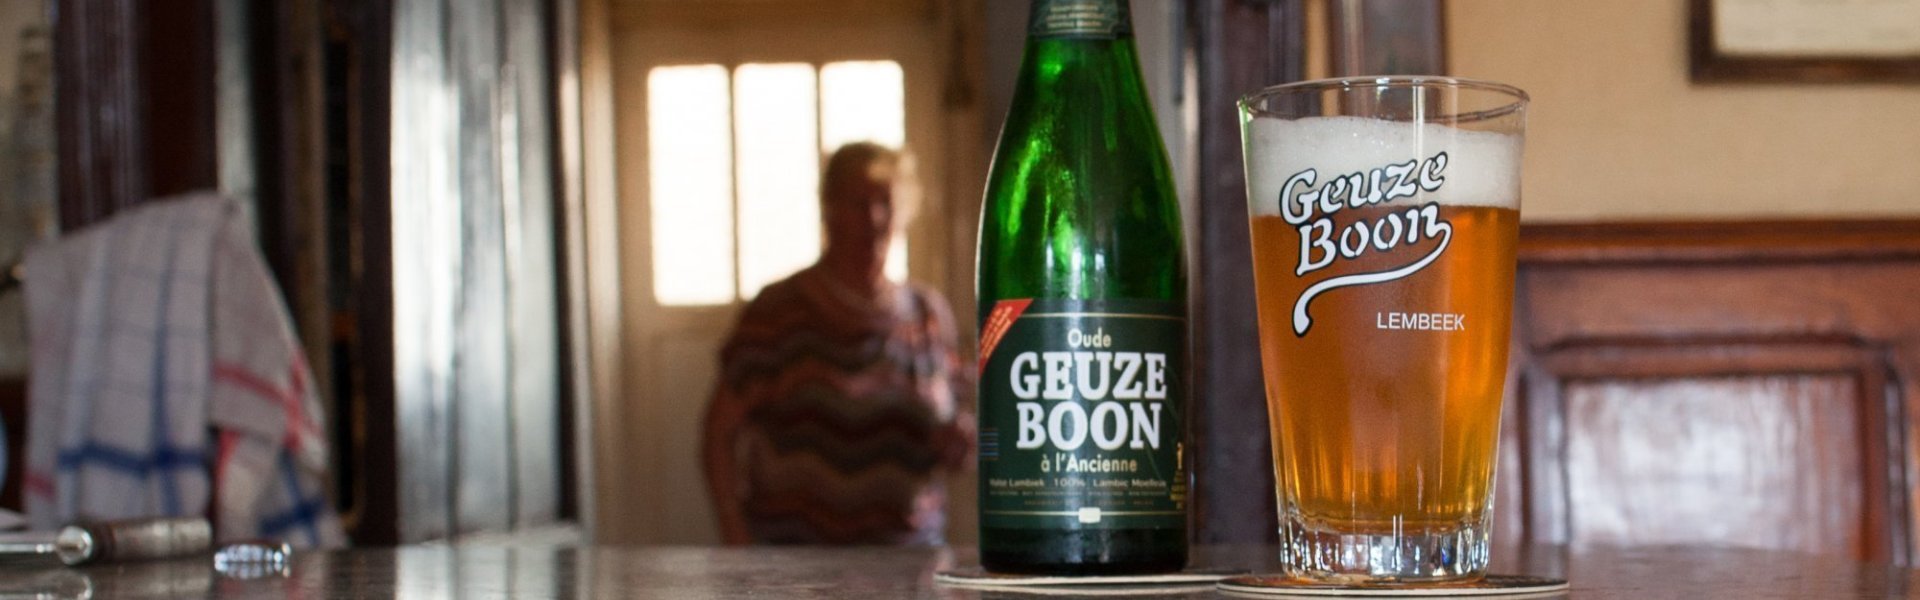 Oude Geuze Boon geserveerd in het authentieke glas met het groene flesje er naast. Op de authentieke toog van een 'bruine kroeg' zoals we zeggen.